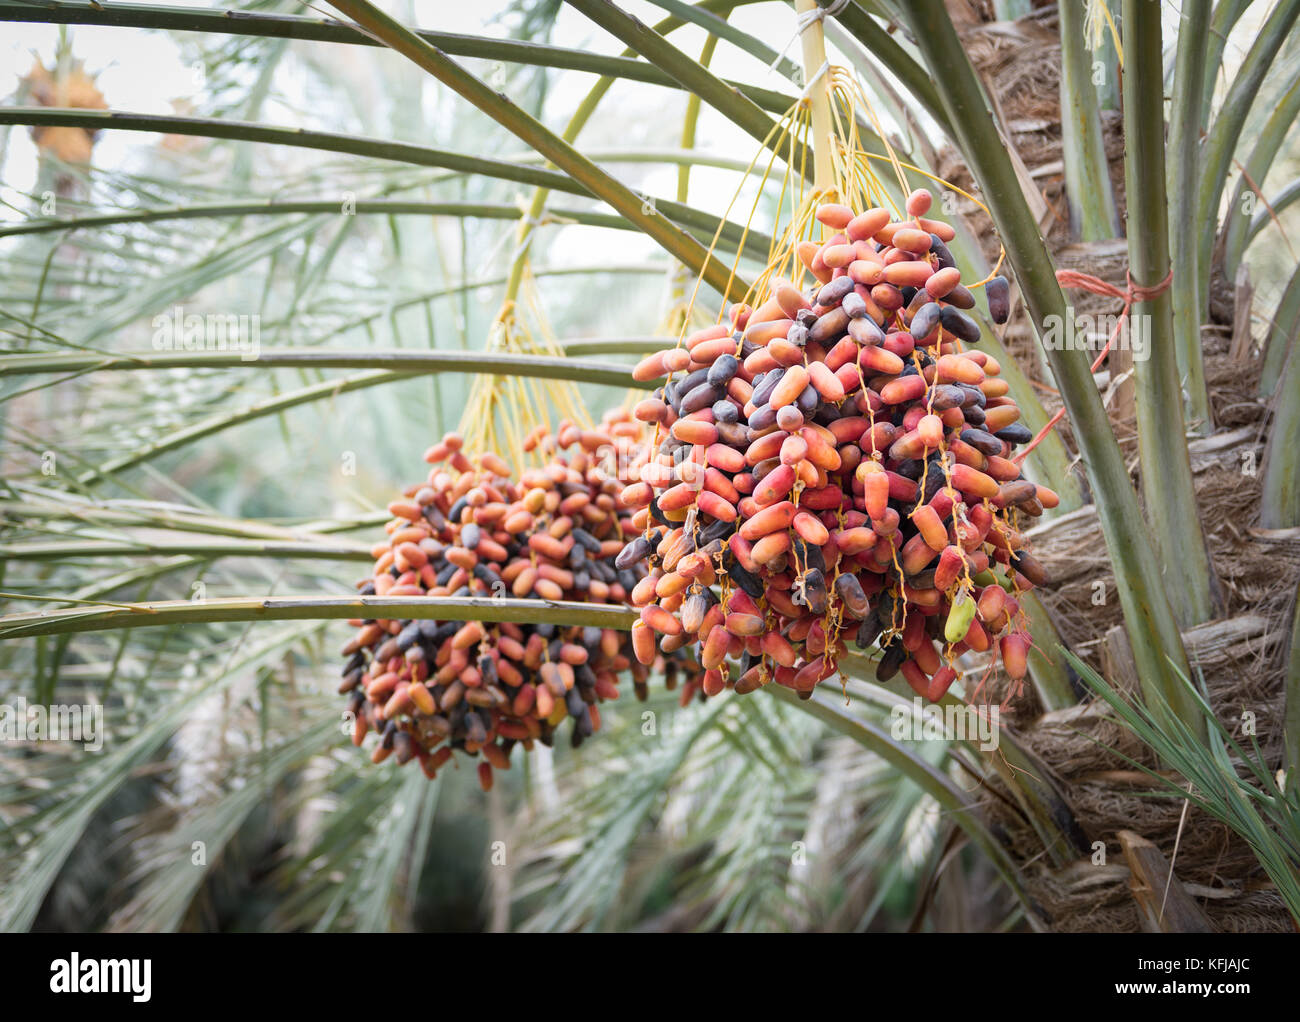 Datteri freschi ad Al Ain oasis, Emirati arabi uniti Foto Stock